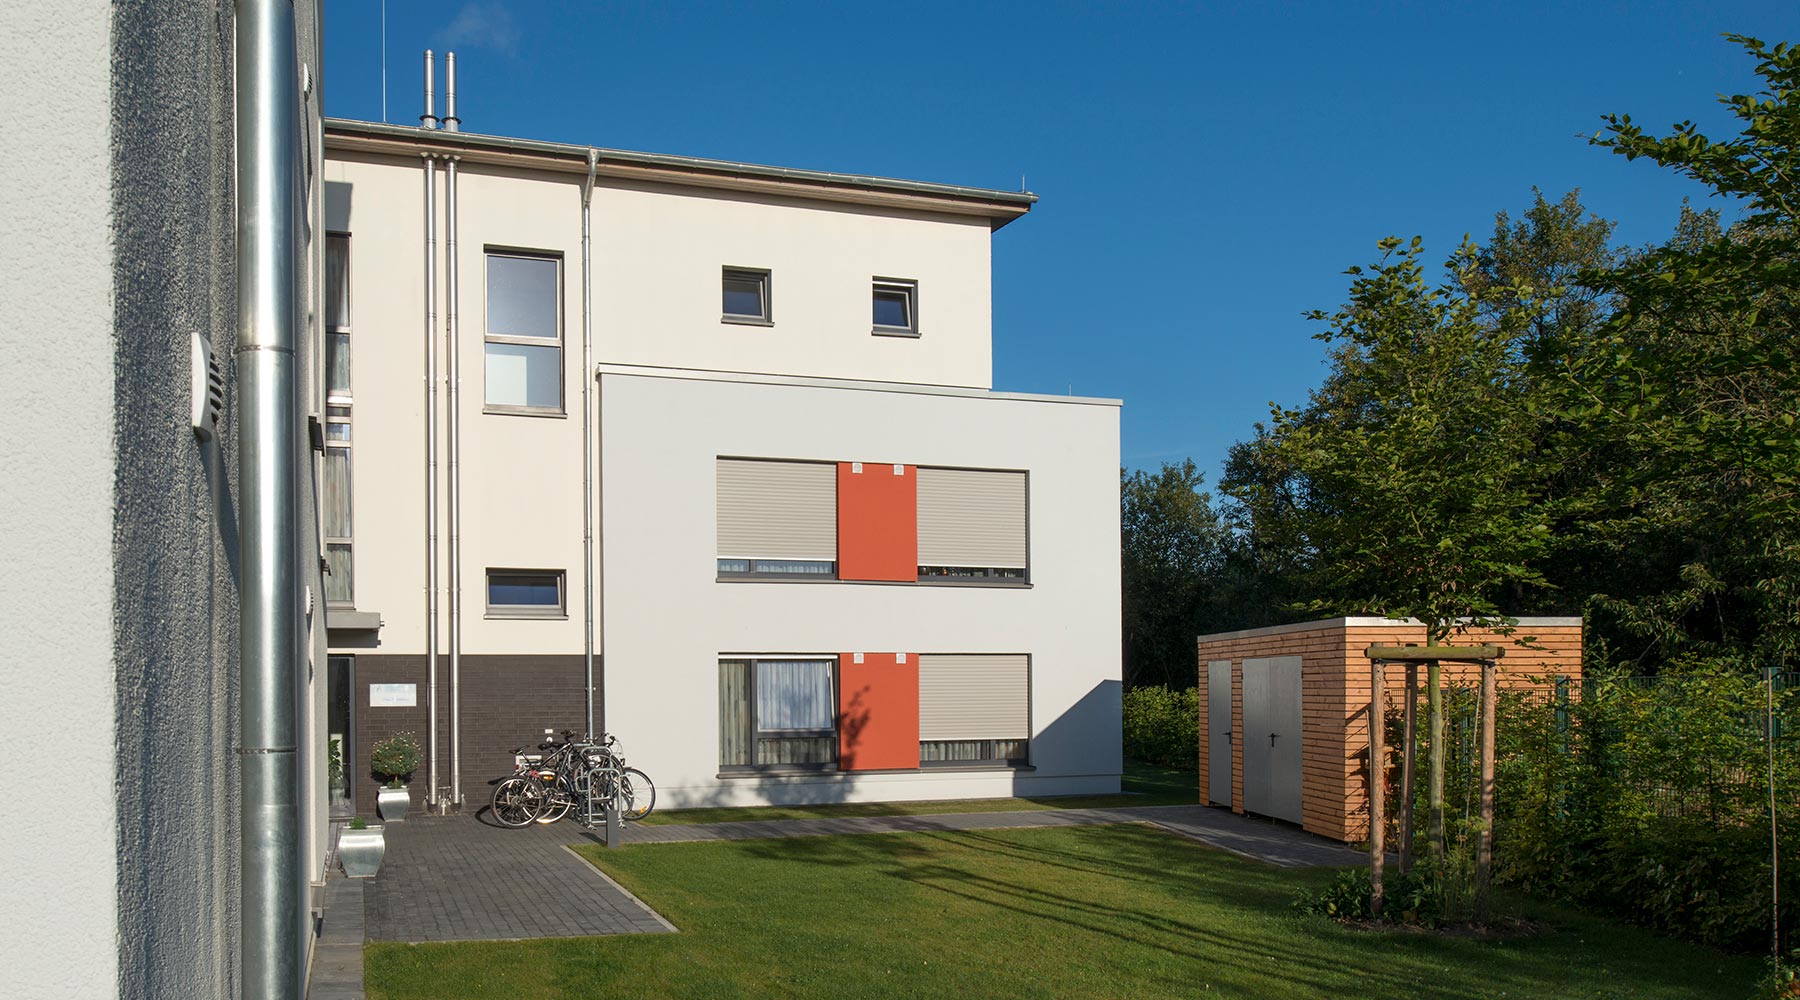 Stationäres Wohnheim Haus Matthias in Neuss. Ansicht vom Garten: Helle Fassade mit orangen Akzenten.